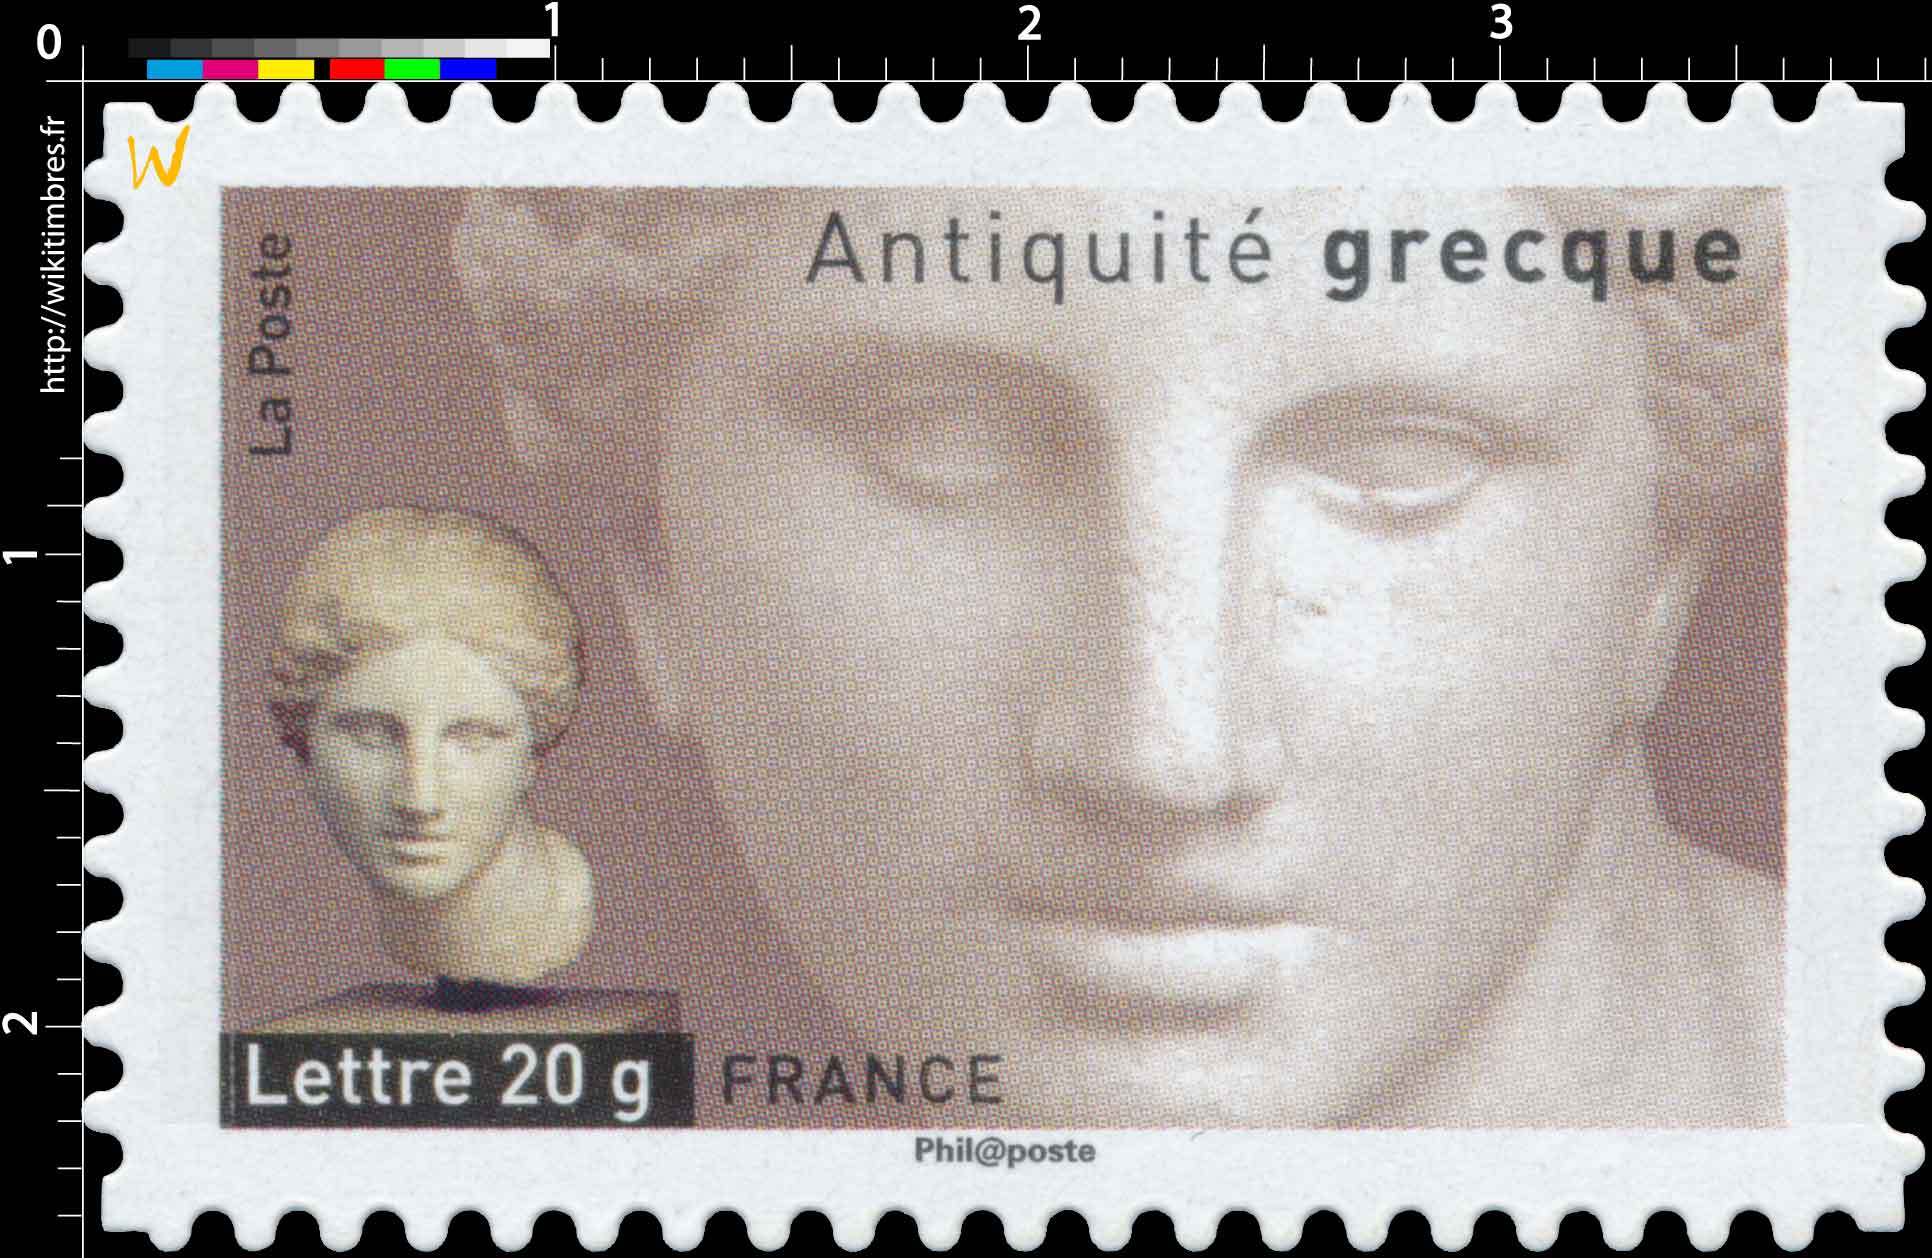 Antiquité grecque